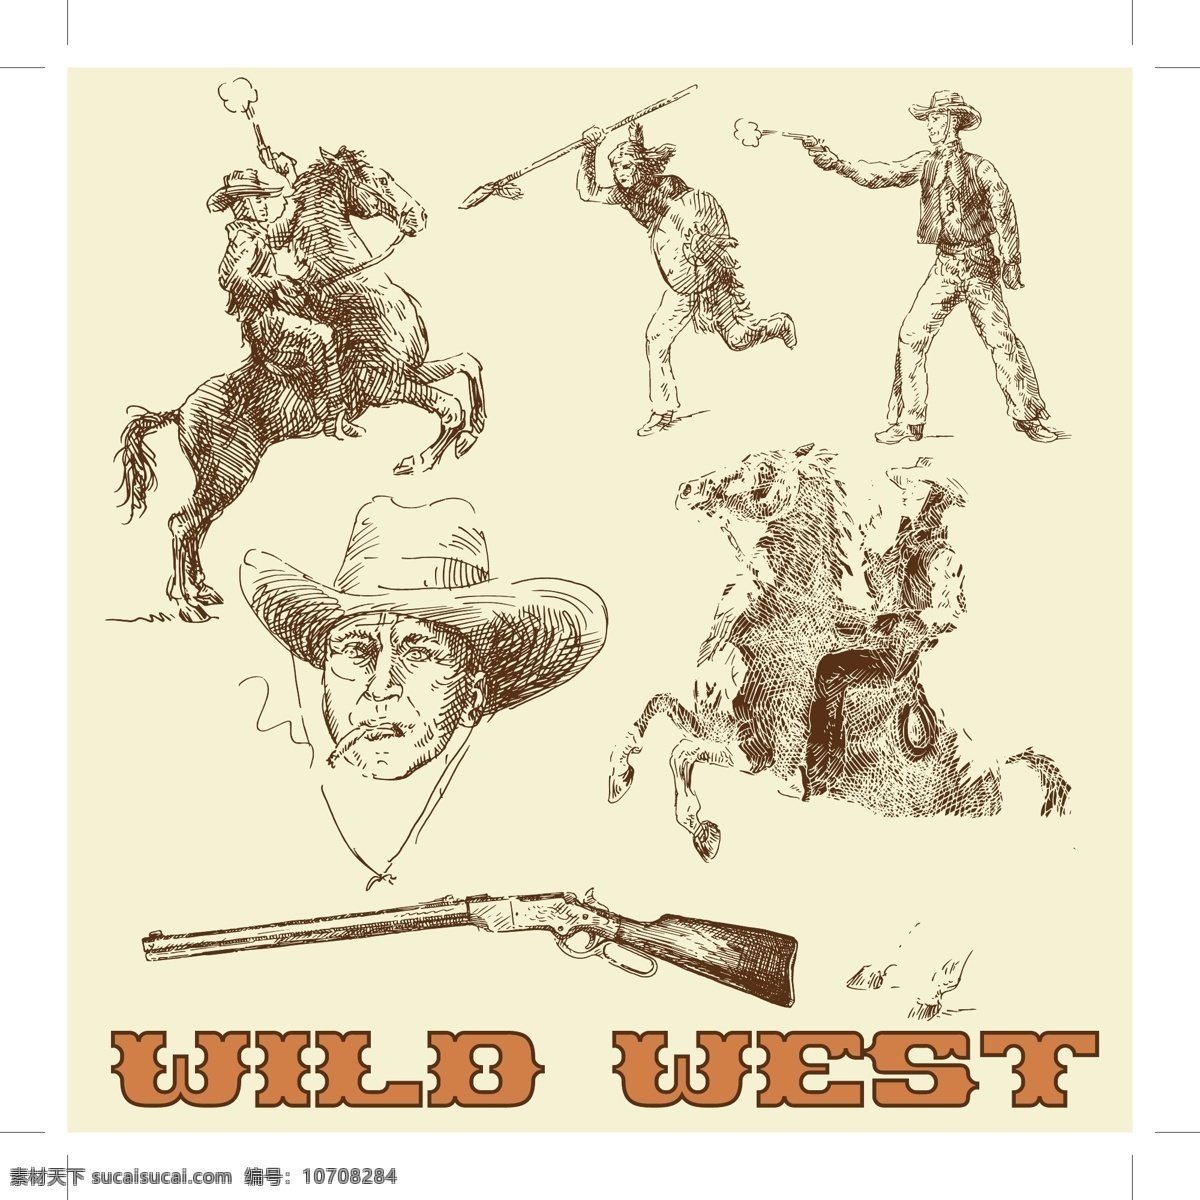 西部牛仔线稿 动物 复古 猎枪 帽子 模板 设计稿 矢量素材 手绘 手枪 西部牛仔 线稿 印第安人 马 素描 长矛 素材元素 源文件 矢量图